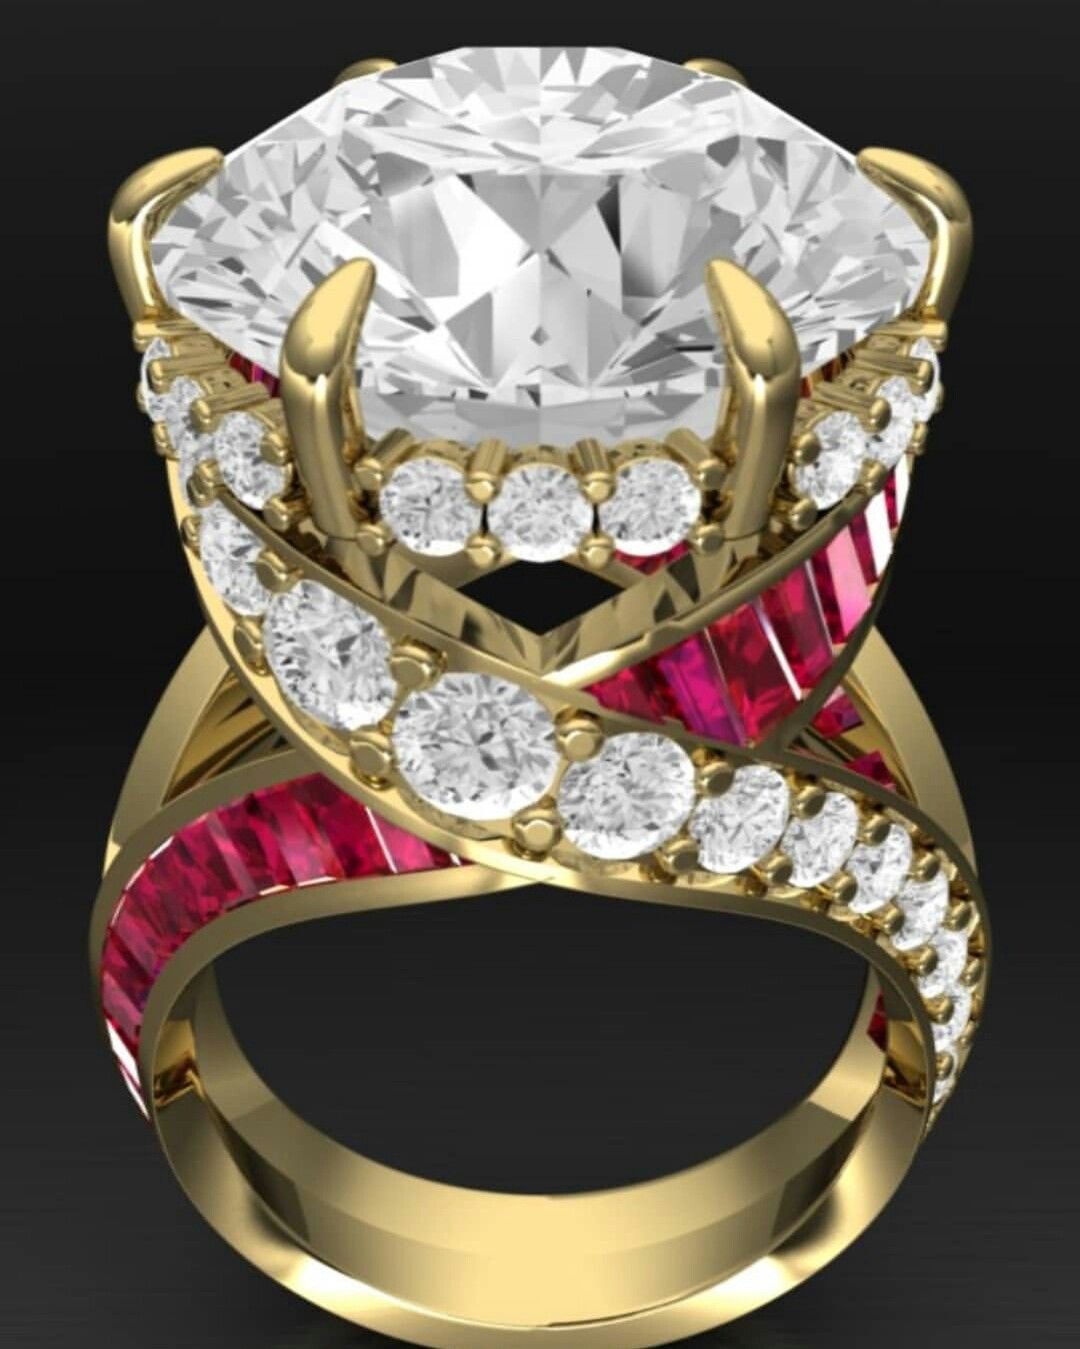 Ювелирное изделие кольцо с бриллиантом. Золотое кольцо Рубин бриллианты эксклюзив. Кольцо Faberge 18 карат. Кольцо Голд Даймонд. Дорогие украшения с бриллиантами.